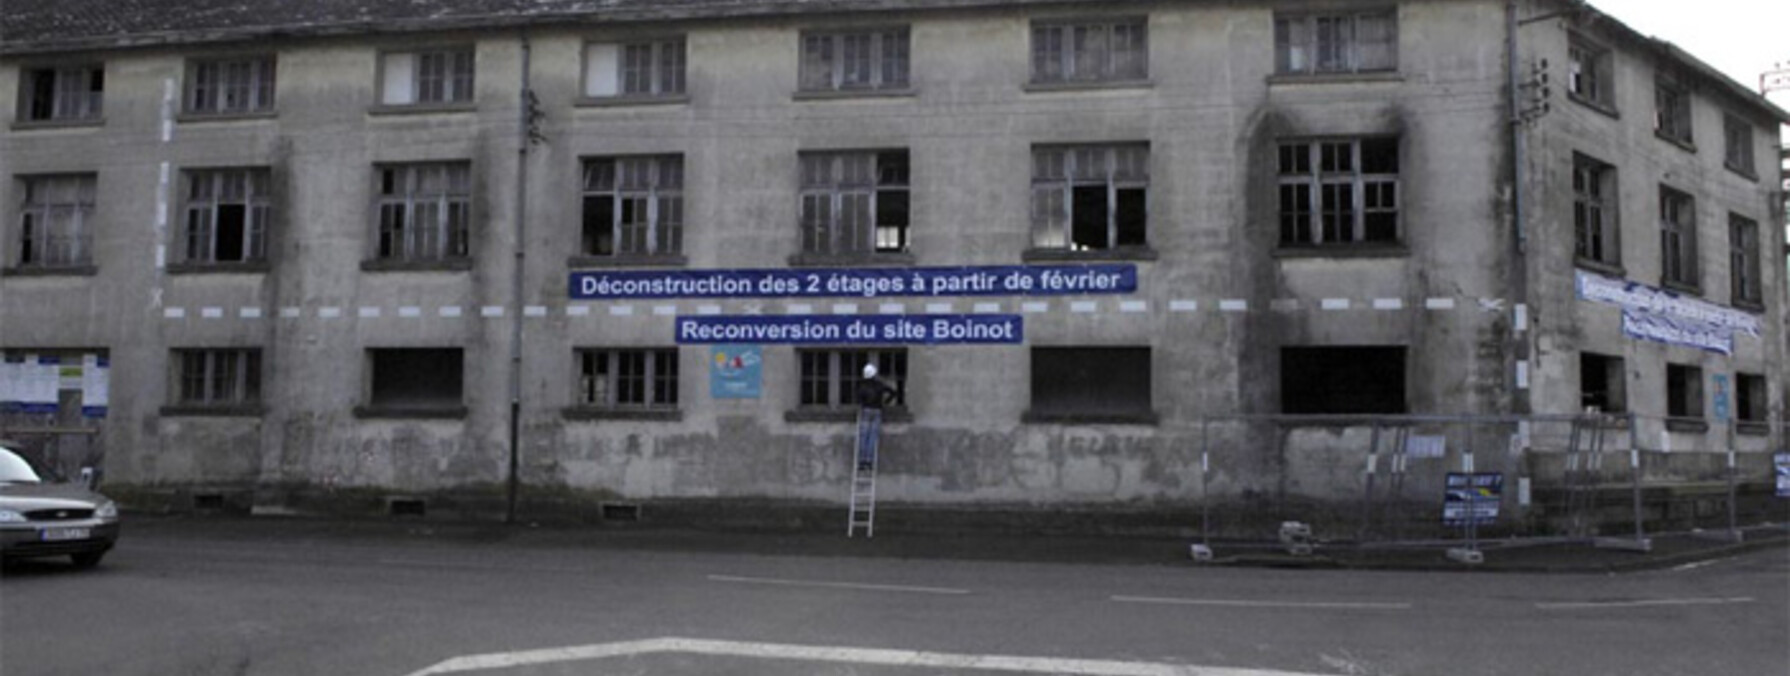 Déconstruction de bâtiments aux anciennes usines Boinot
